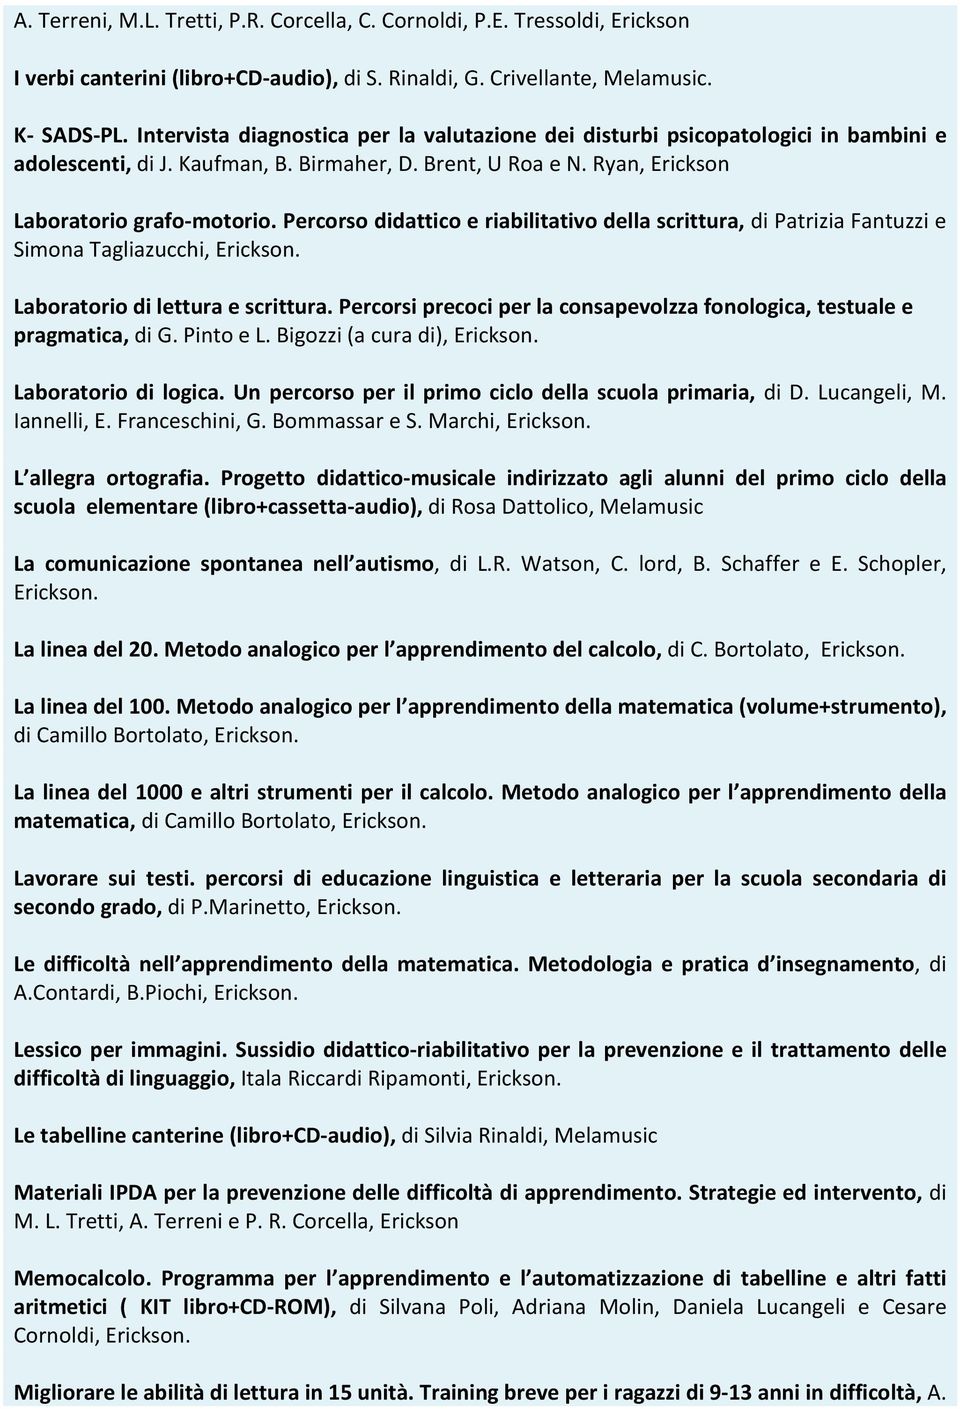 Percorso didattico e riabilitativo della scrittura, di Patrizia Fantuzzi e Simona Tagliazucchi, Laboratorio di lettura e scrittura.